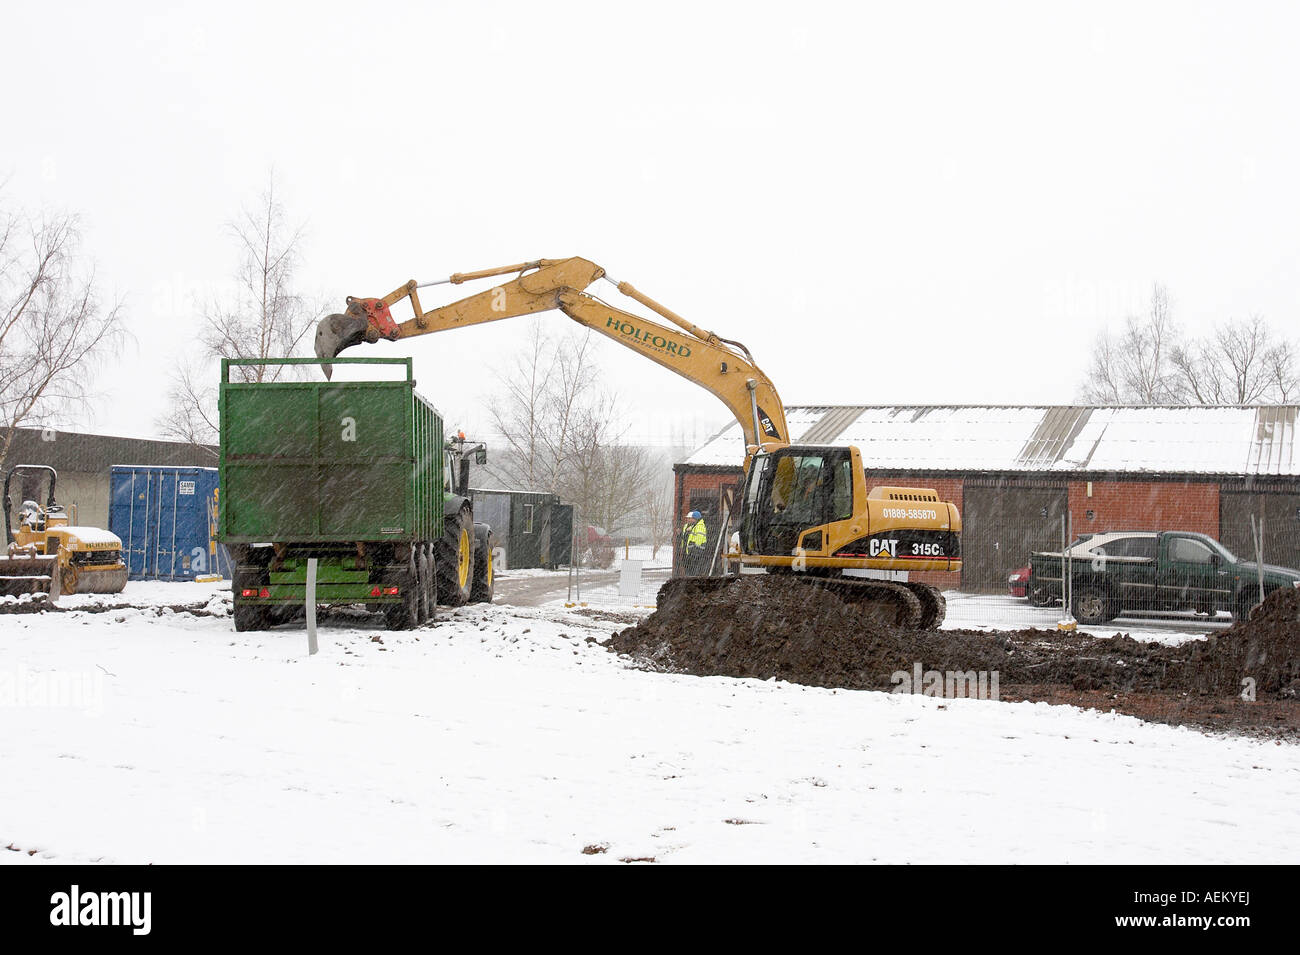 Una excavadora JCB trabaja en una obra en construcción en la nieve. Foto de stock